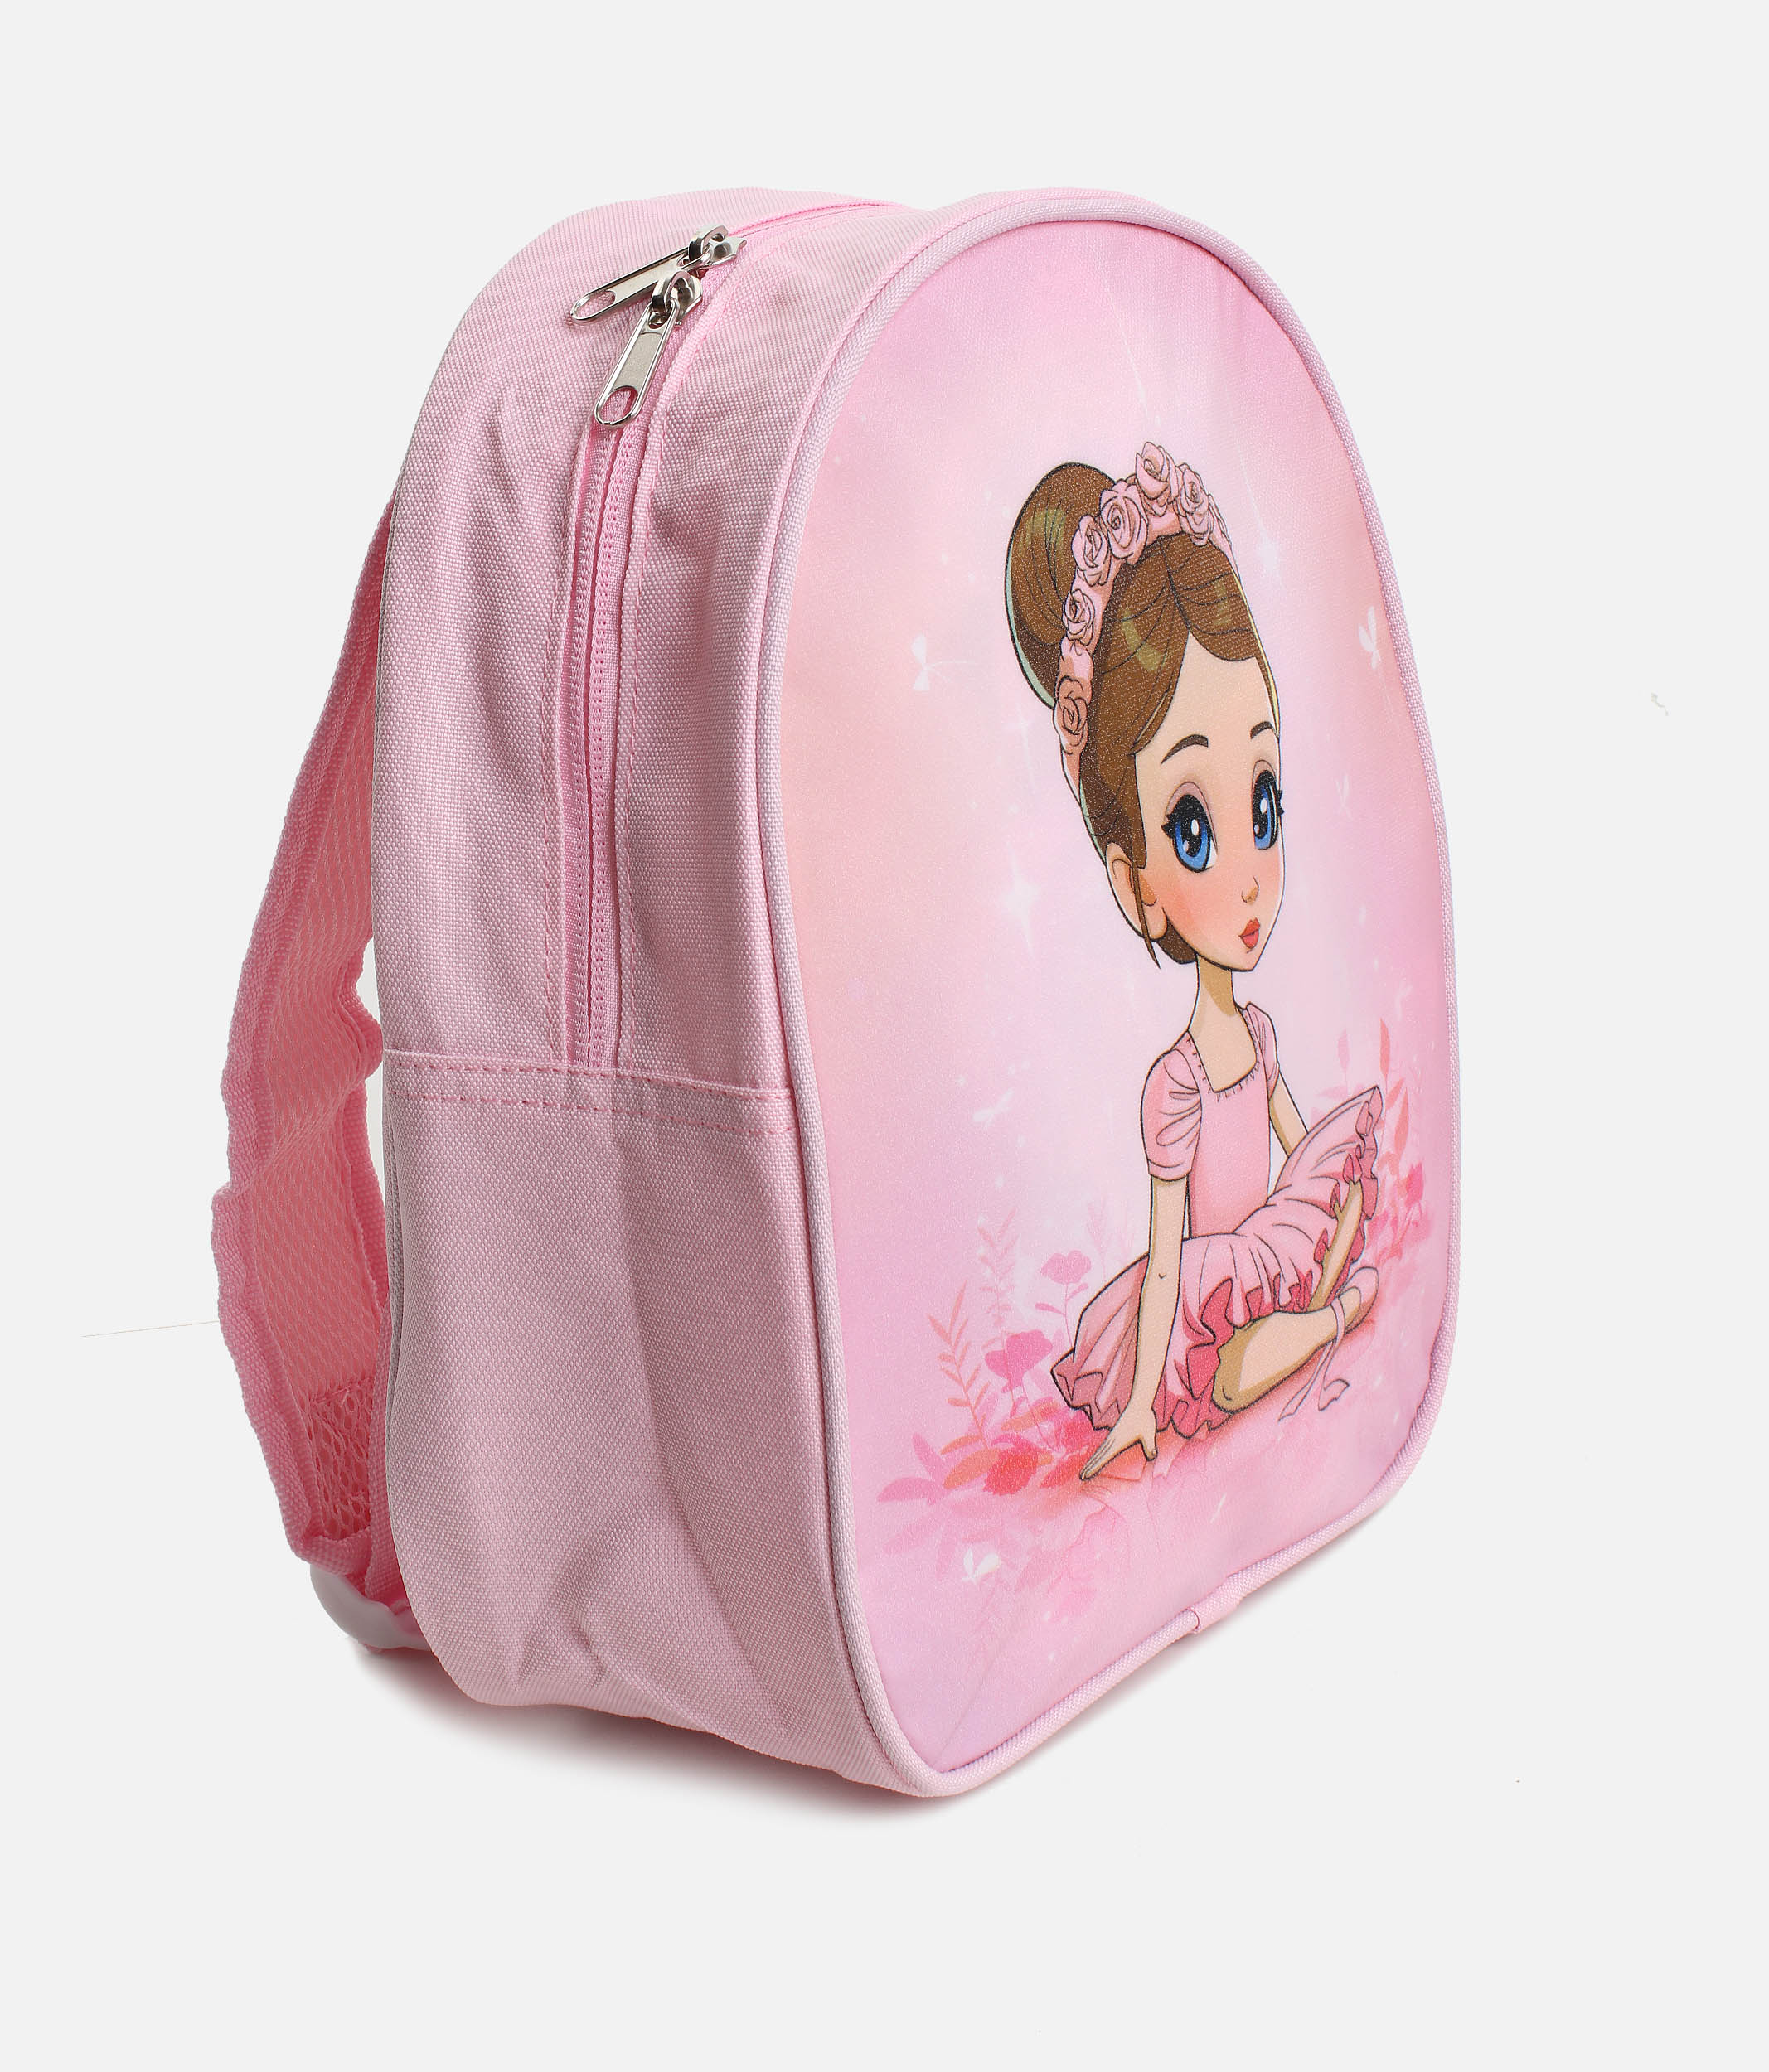 Cute Ballerina Backpack - Dance World